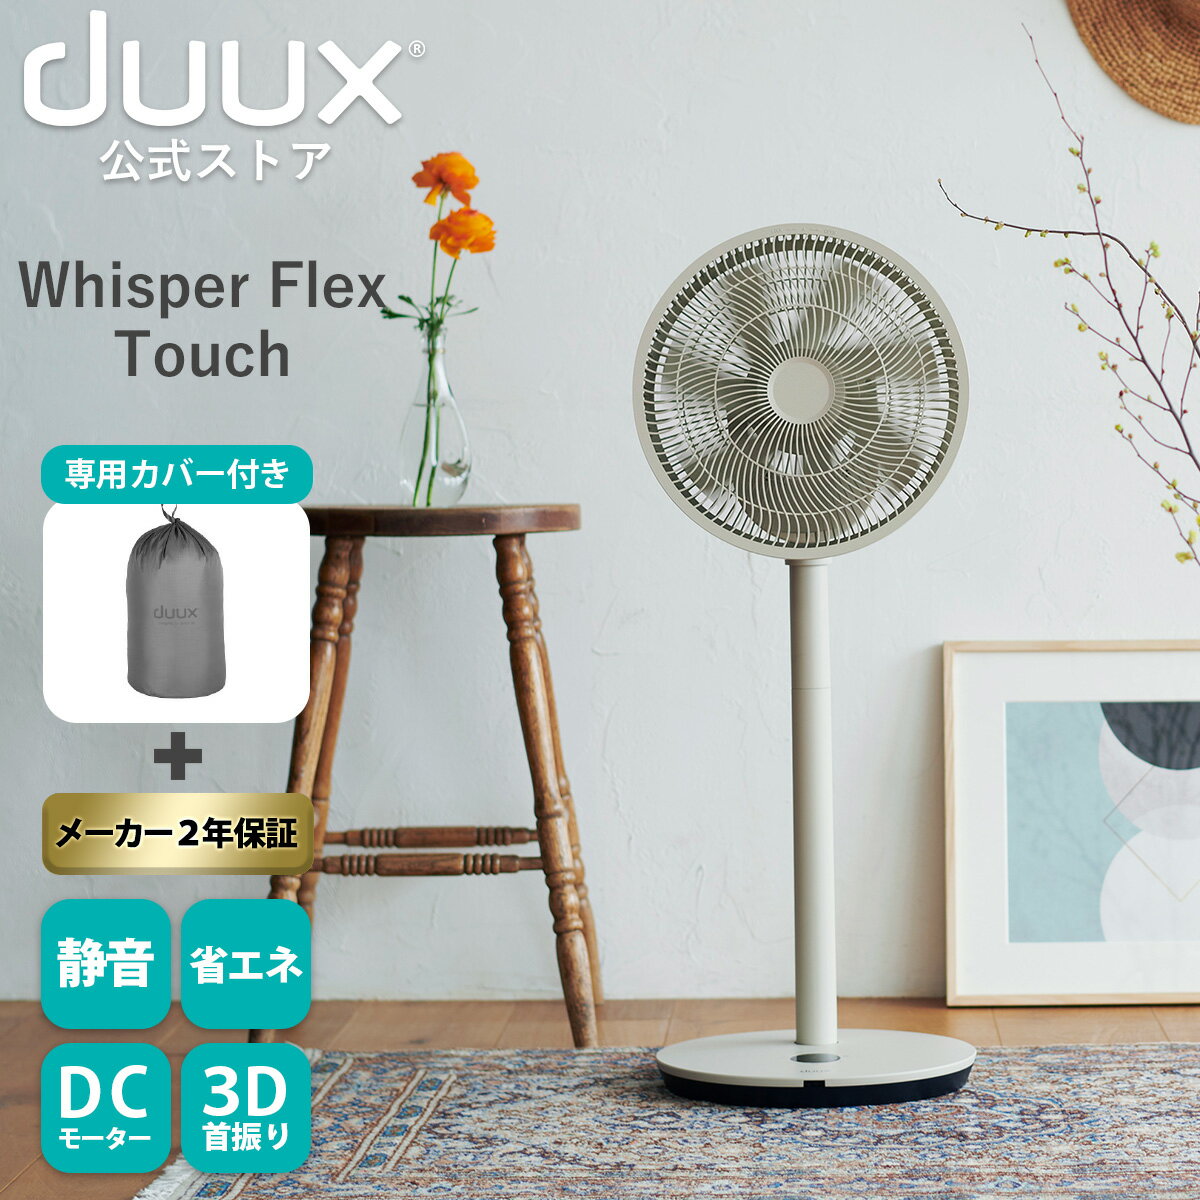 duux デュクス Whisper flex touch ウィスパーフレックスタッチ DXCF34JP 扇風機 サーキュレーター DCモーター タッチパネル 26段階 3D 送風 風 タッチパネル 卓上 おしゃれ インテリア家電 温度センサー dc 360° 省エネ ヨーロッパ家電 リビングファン グレージュ